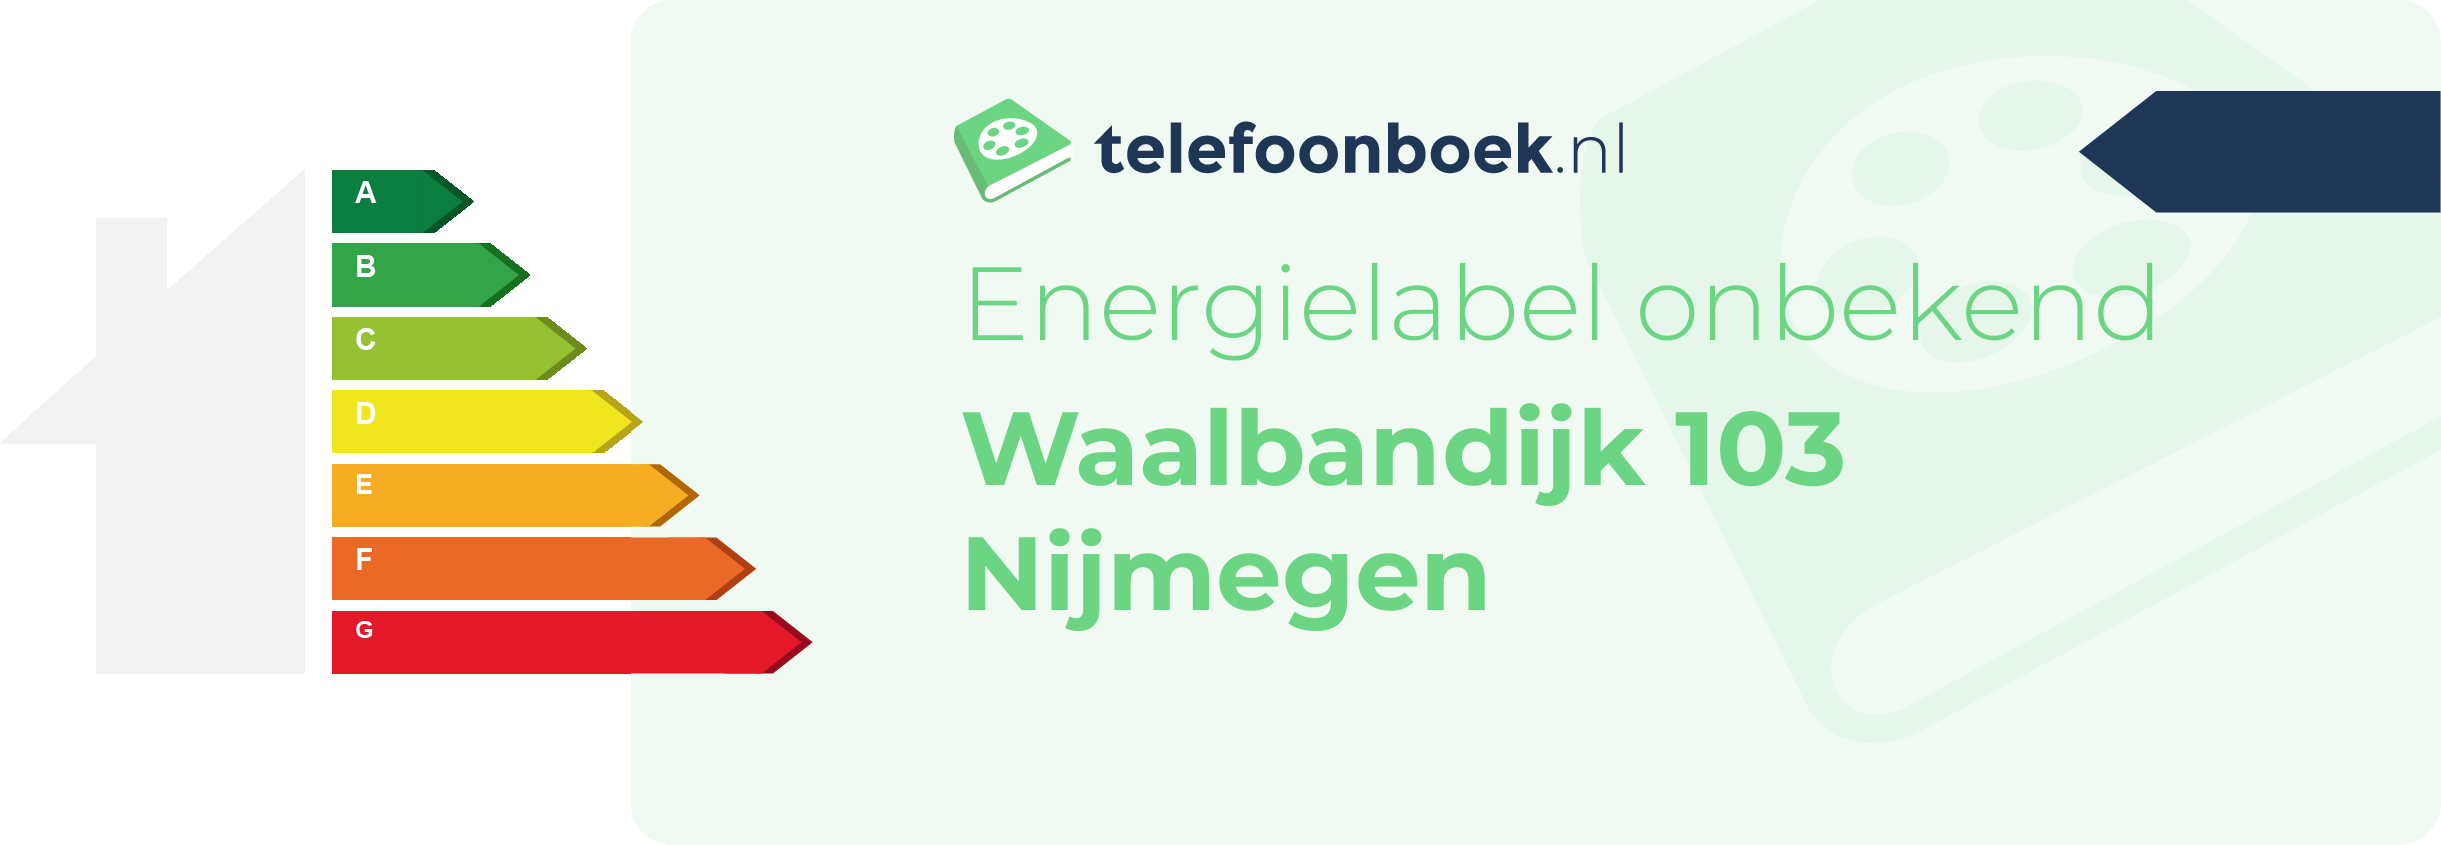 Energielabel Waalbandijk 103 Nijmegen